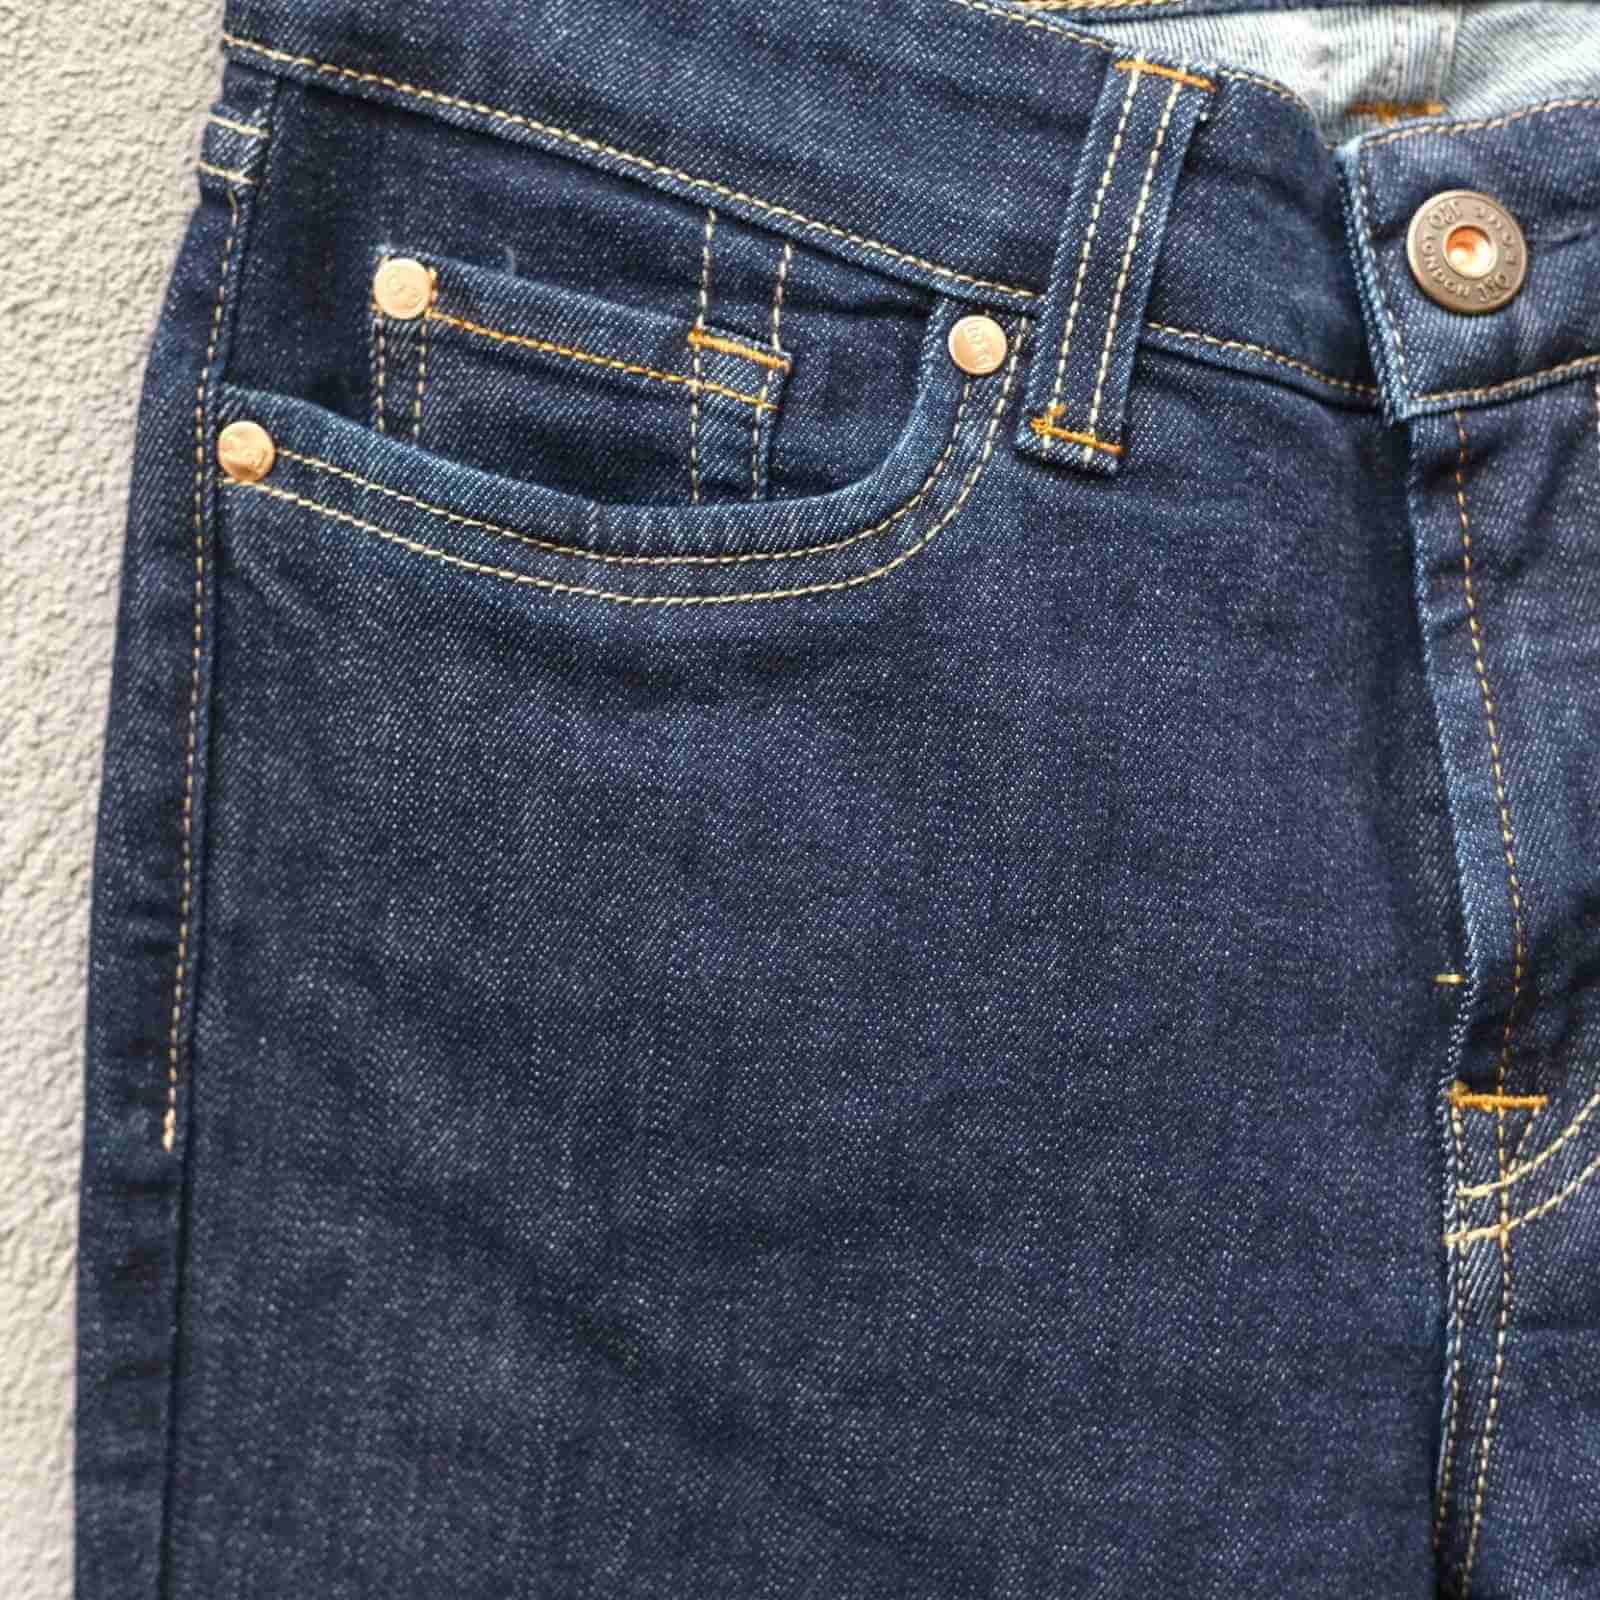 Mørkeblå Jonny Q jeans forlomme detalje